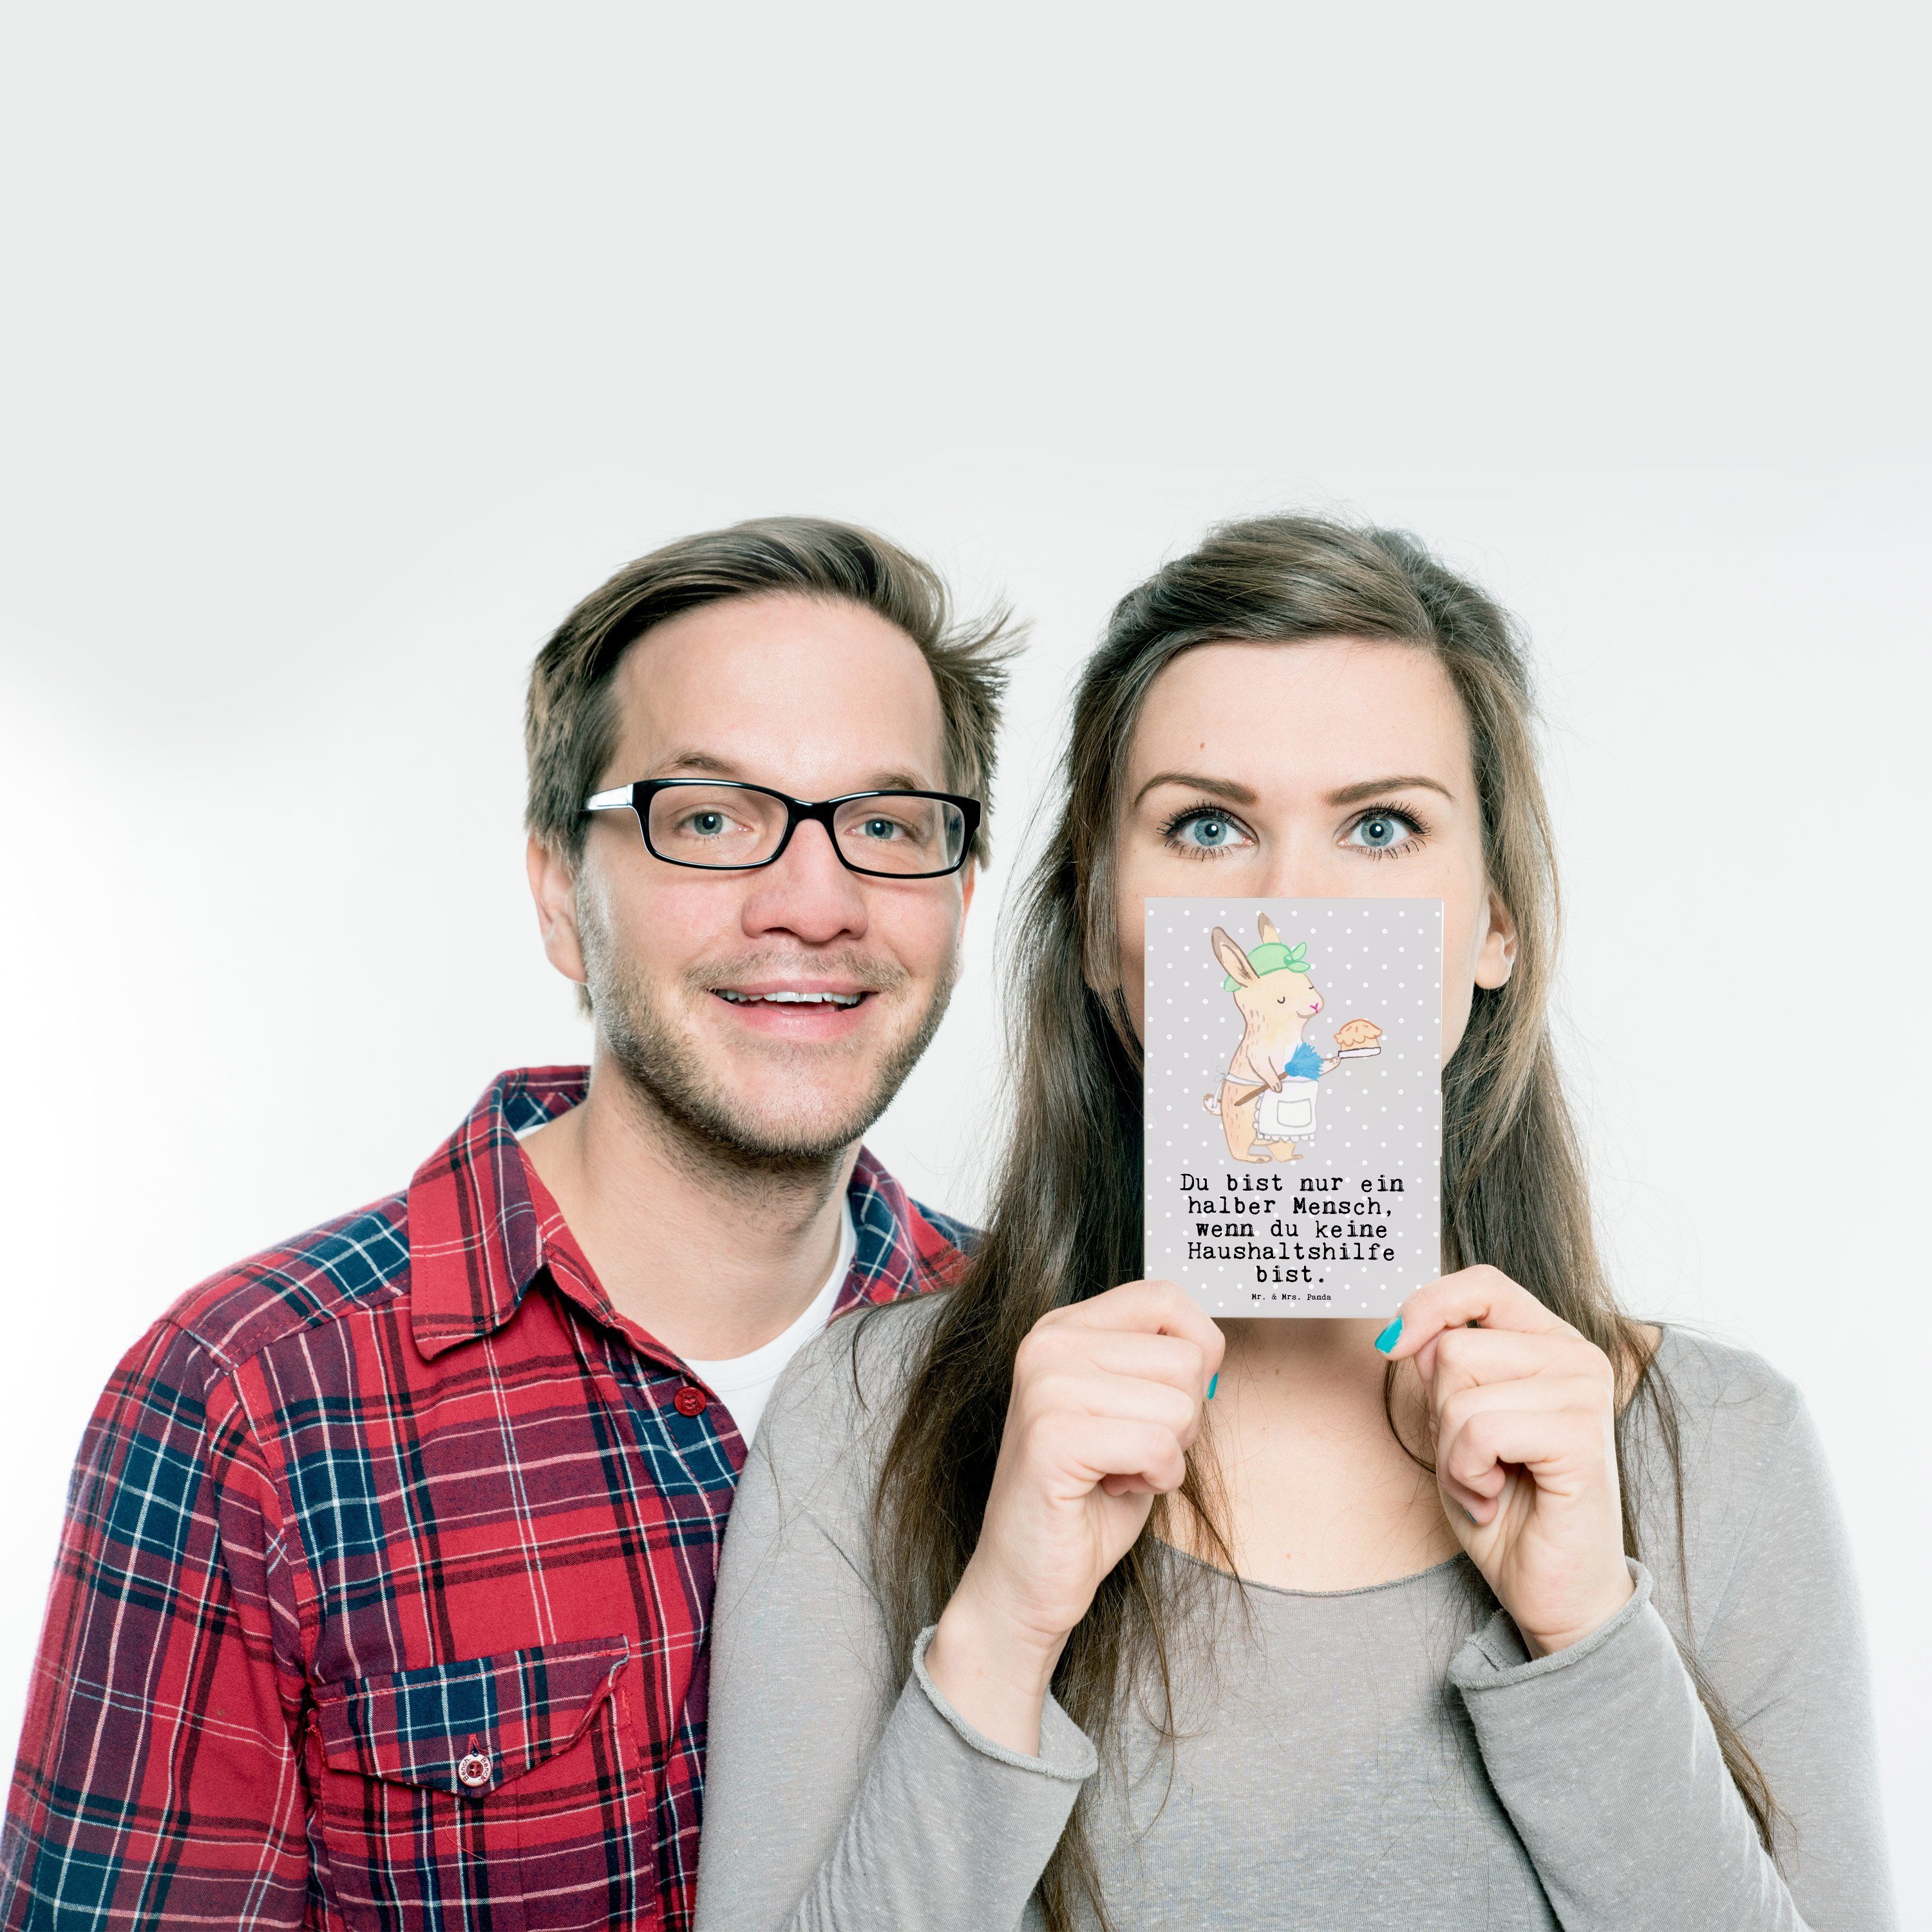 Grau Putzf & - Mr. Geschenk, mit Mrs. Herz Mitarbeiter, Panda Pastell - Postkarte Haushaltshilfe